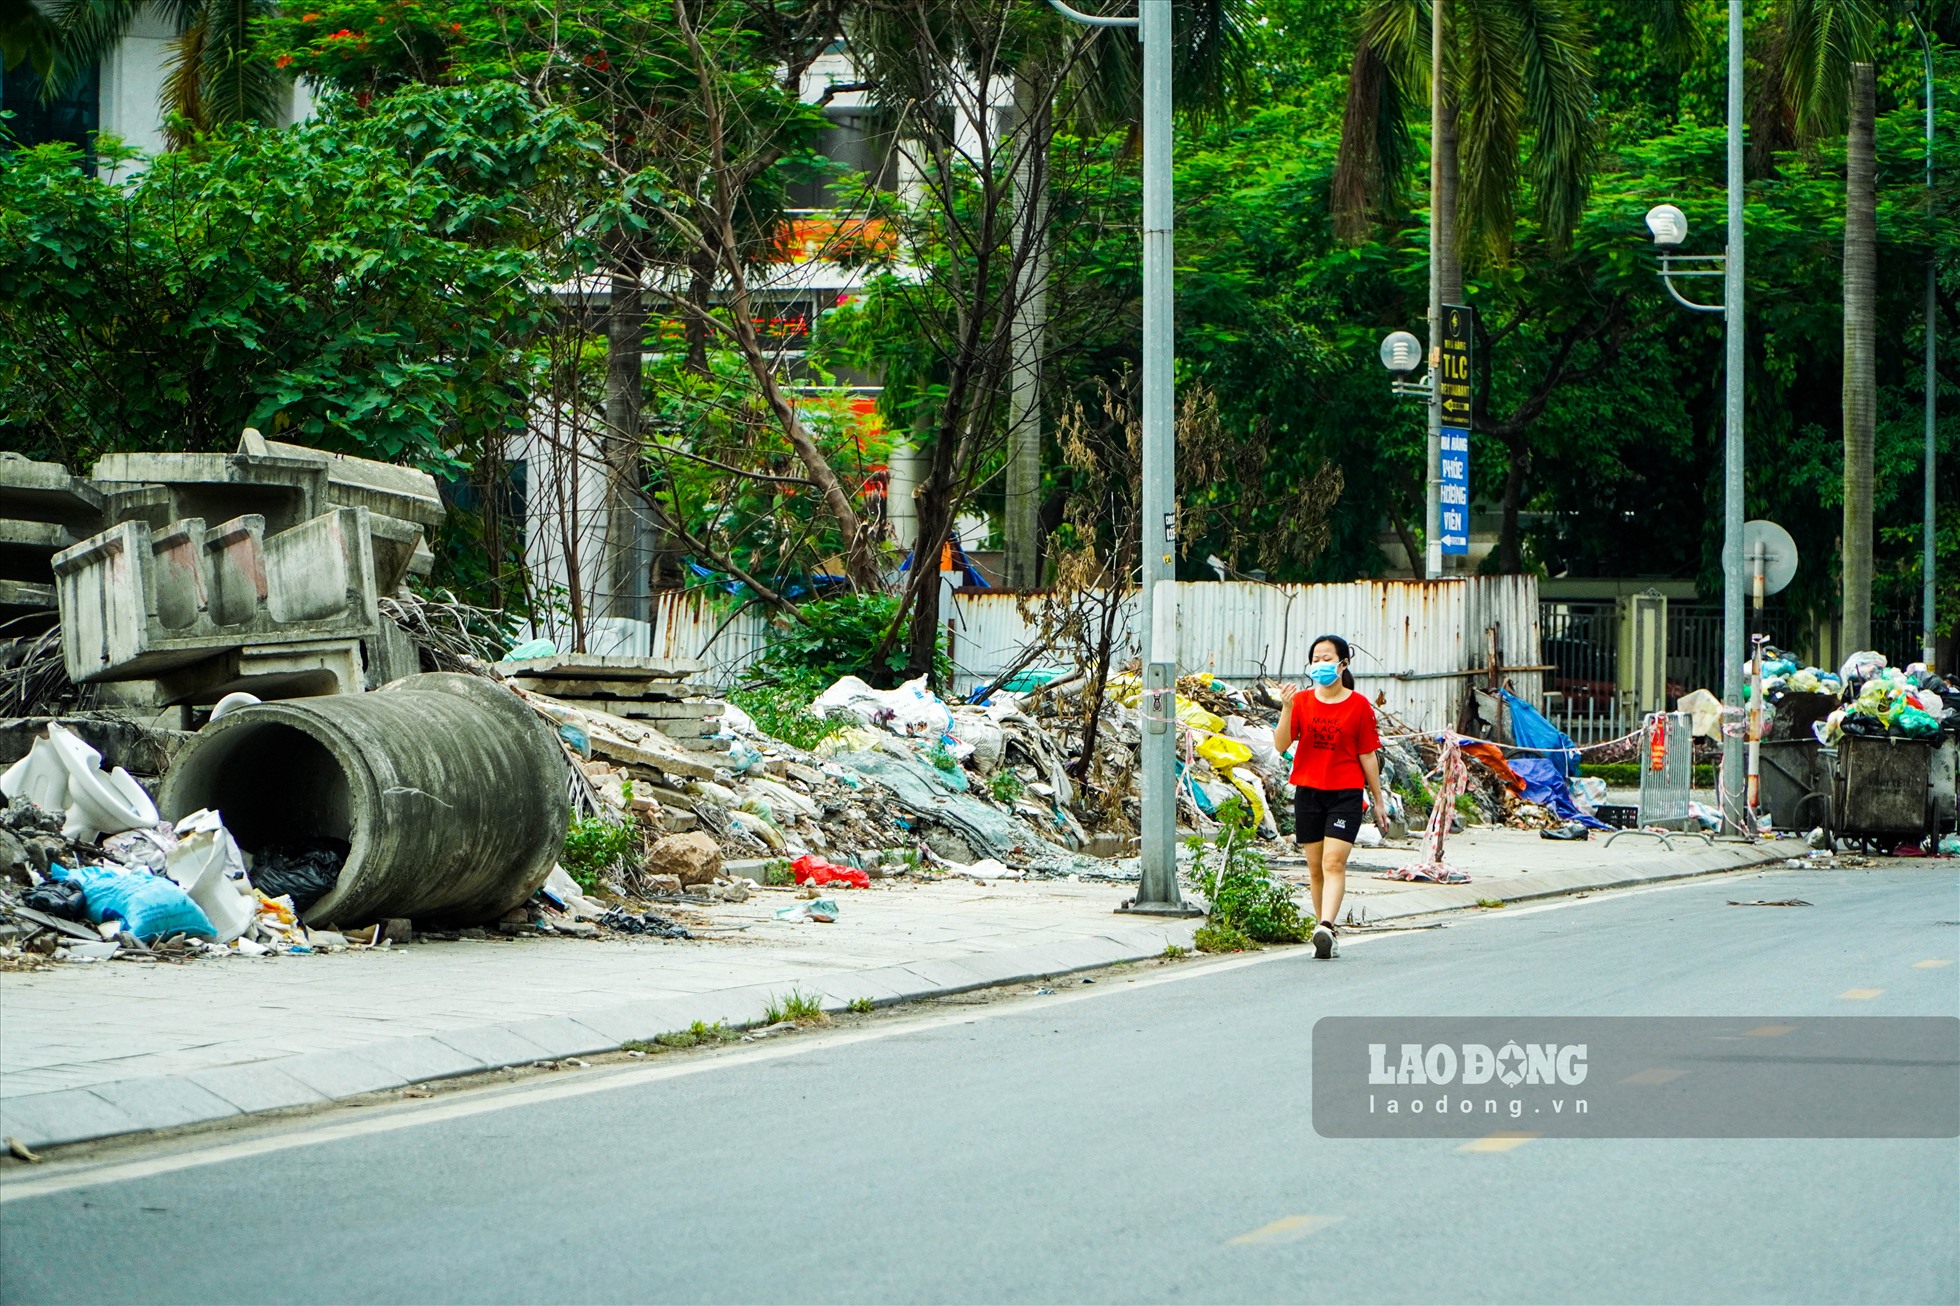 Việc chiếm dụng vỉa hè để đỗ xe và đổ rác thải khiến nhiều người đi bộ phải di chuyển dưới lòng đường, tiềm ẩn nhiều nguy cơ gây mất an toàn giao thông.